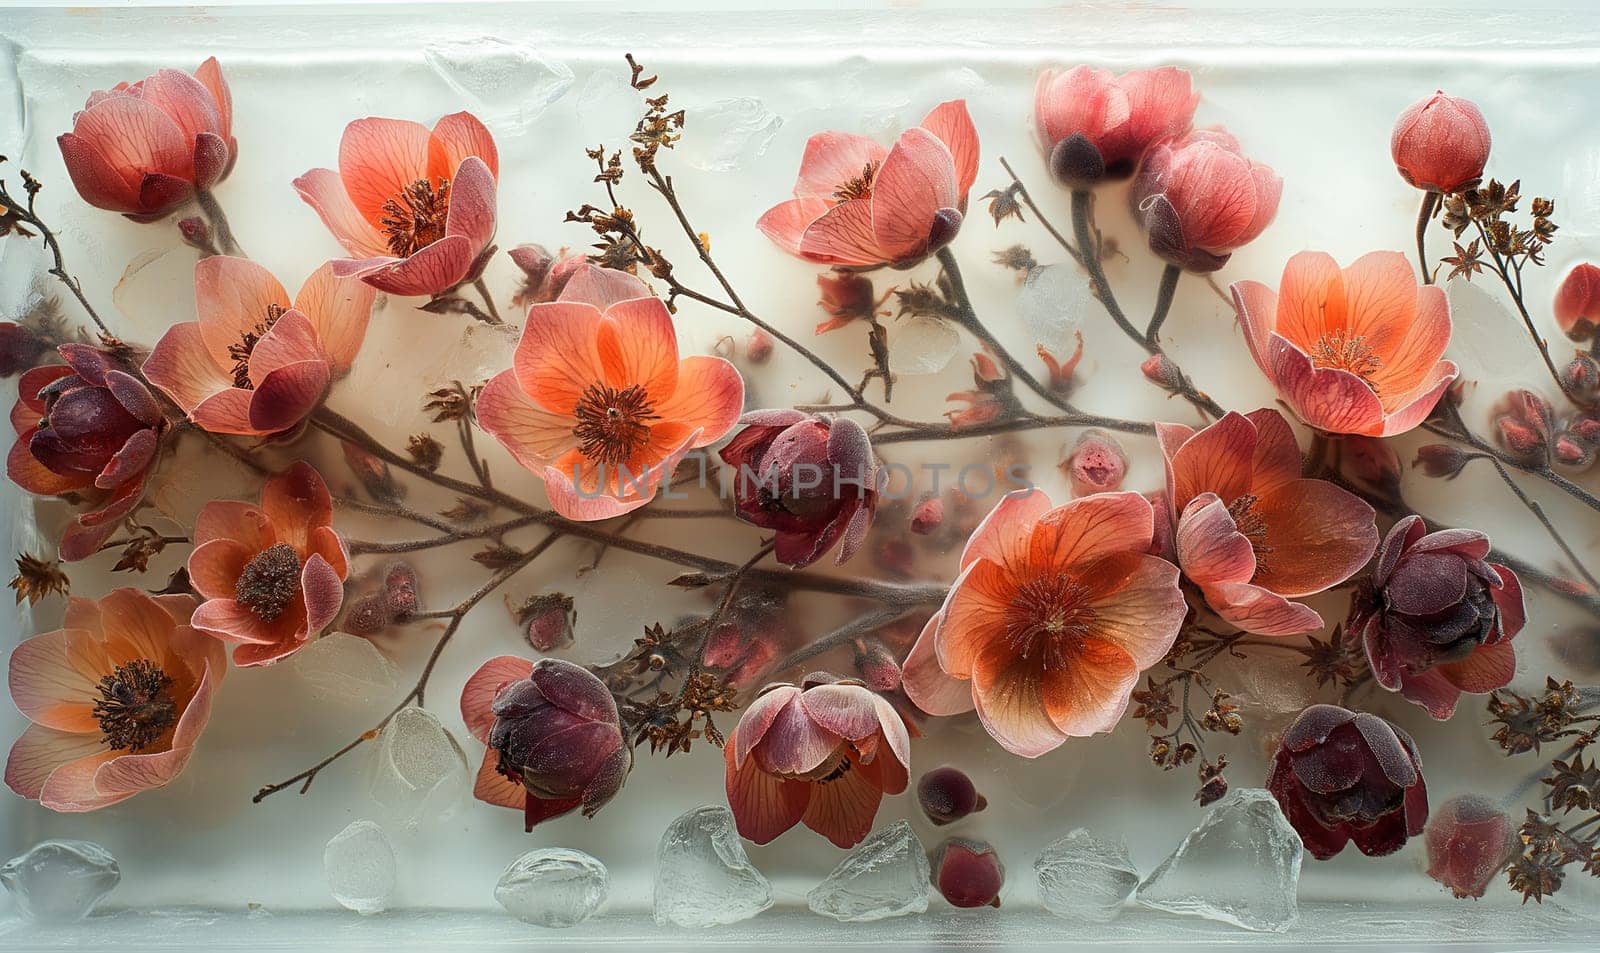 Flower arrangement in epoxy resin. by Fischeron